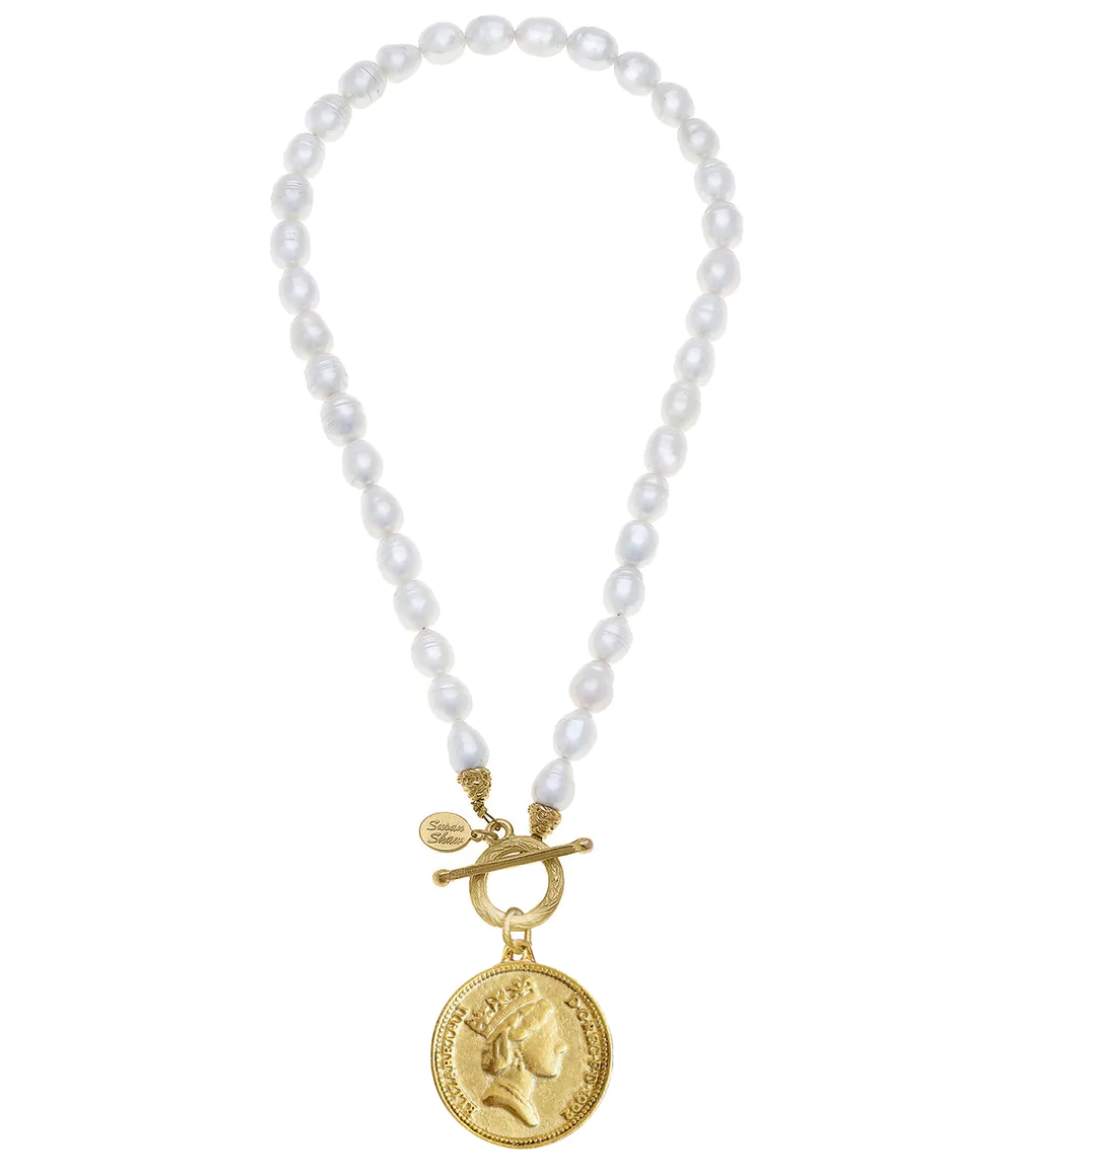 SUSAN SHAW Queen Elizabeth Coin Necklace - pearl